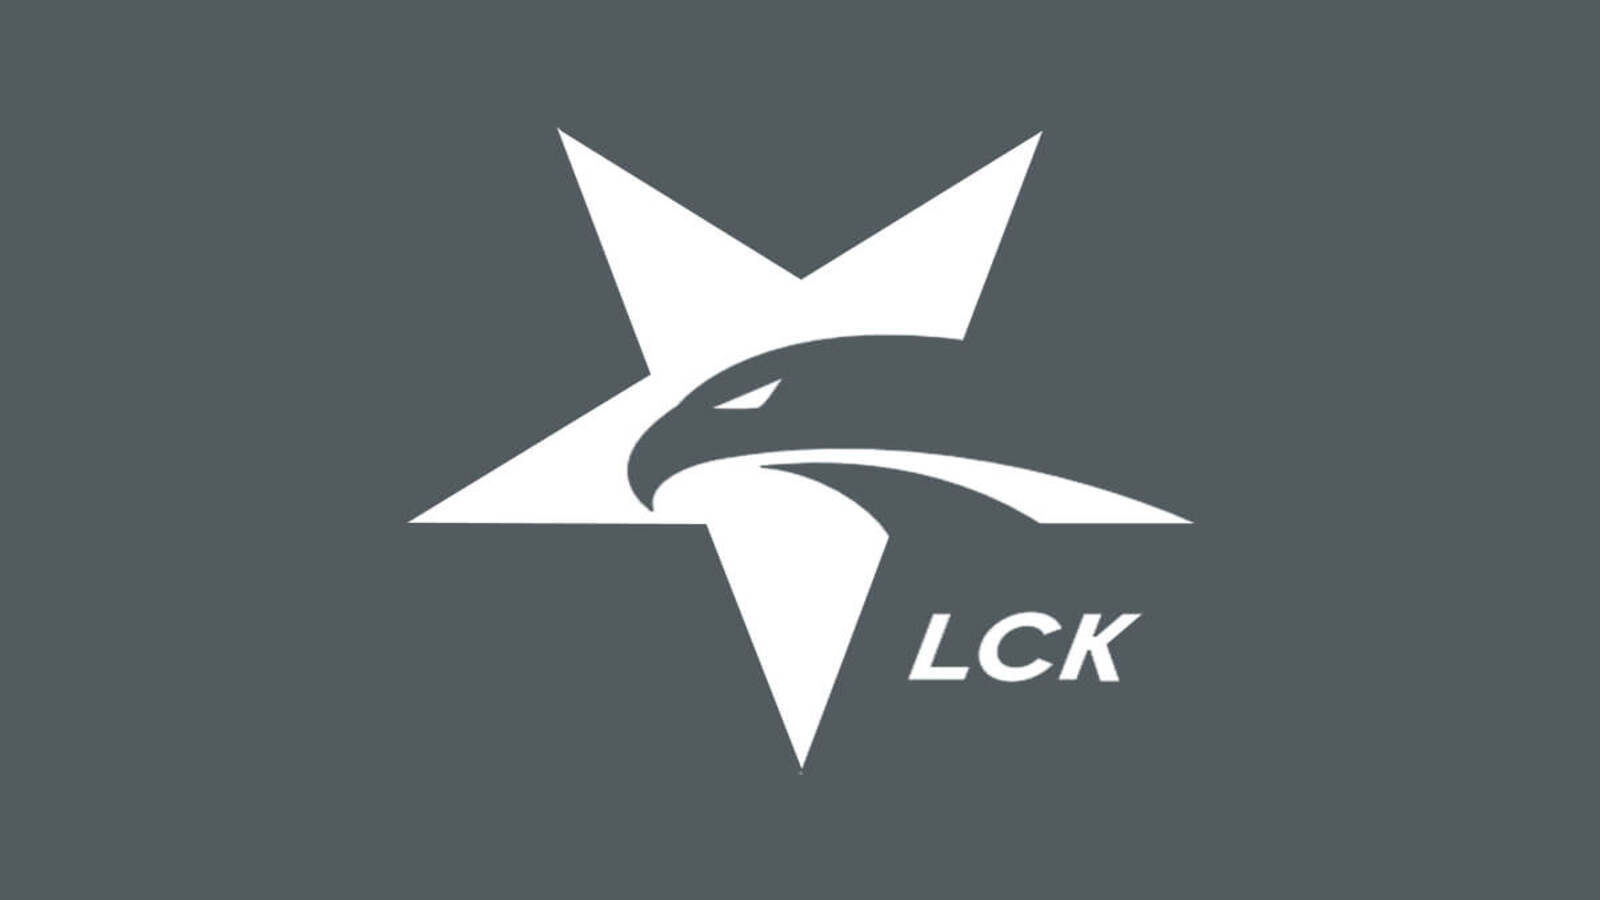 Các đội tuyển ở LCK được cho là đang “all in” vào mùa giải 2022 để gặt hái danh hiệu.